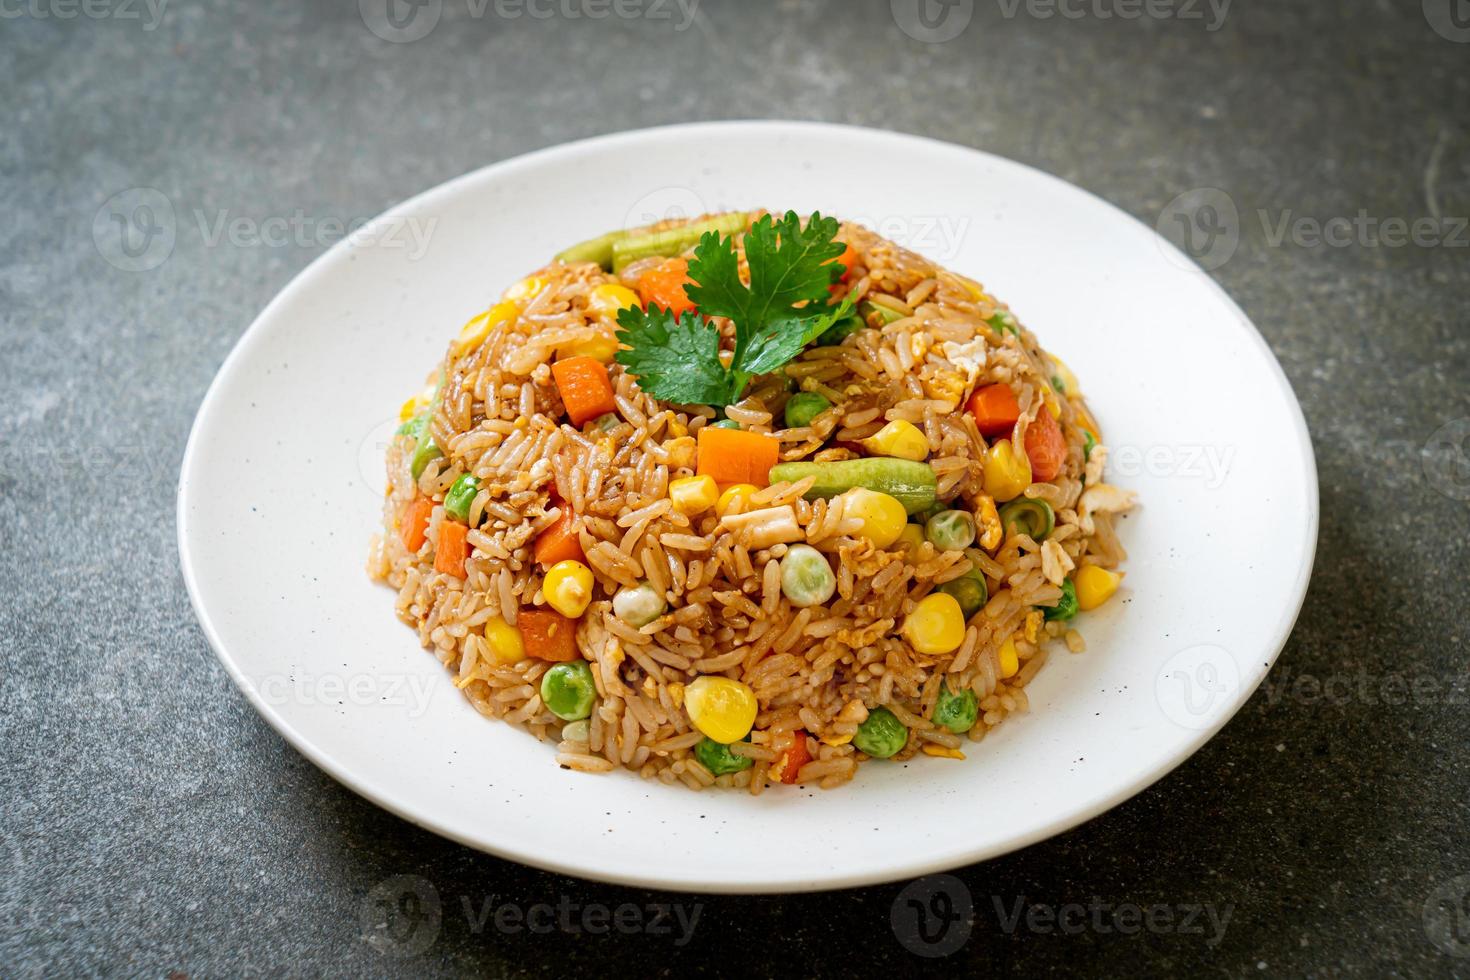 gebakken rijst met groene erwten, wortelen en maïs - vegetarische en gezonde voedingsstijl foto